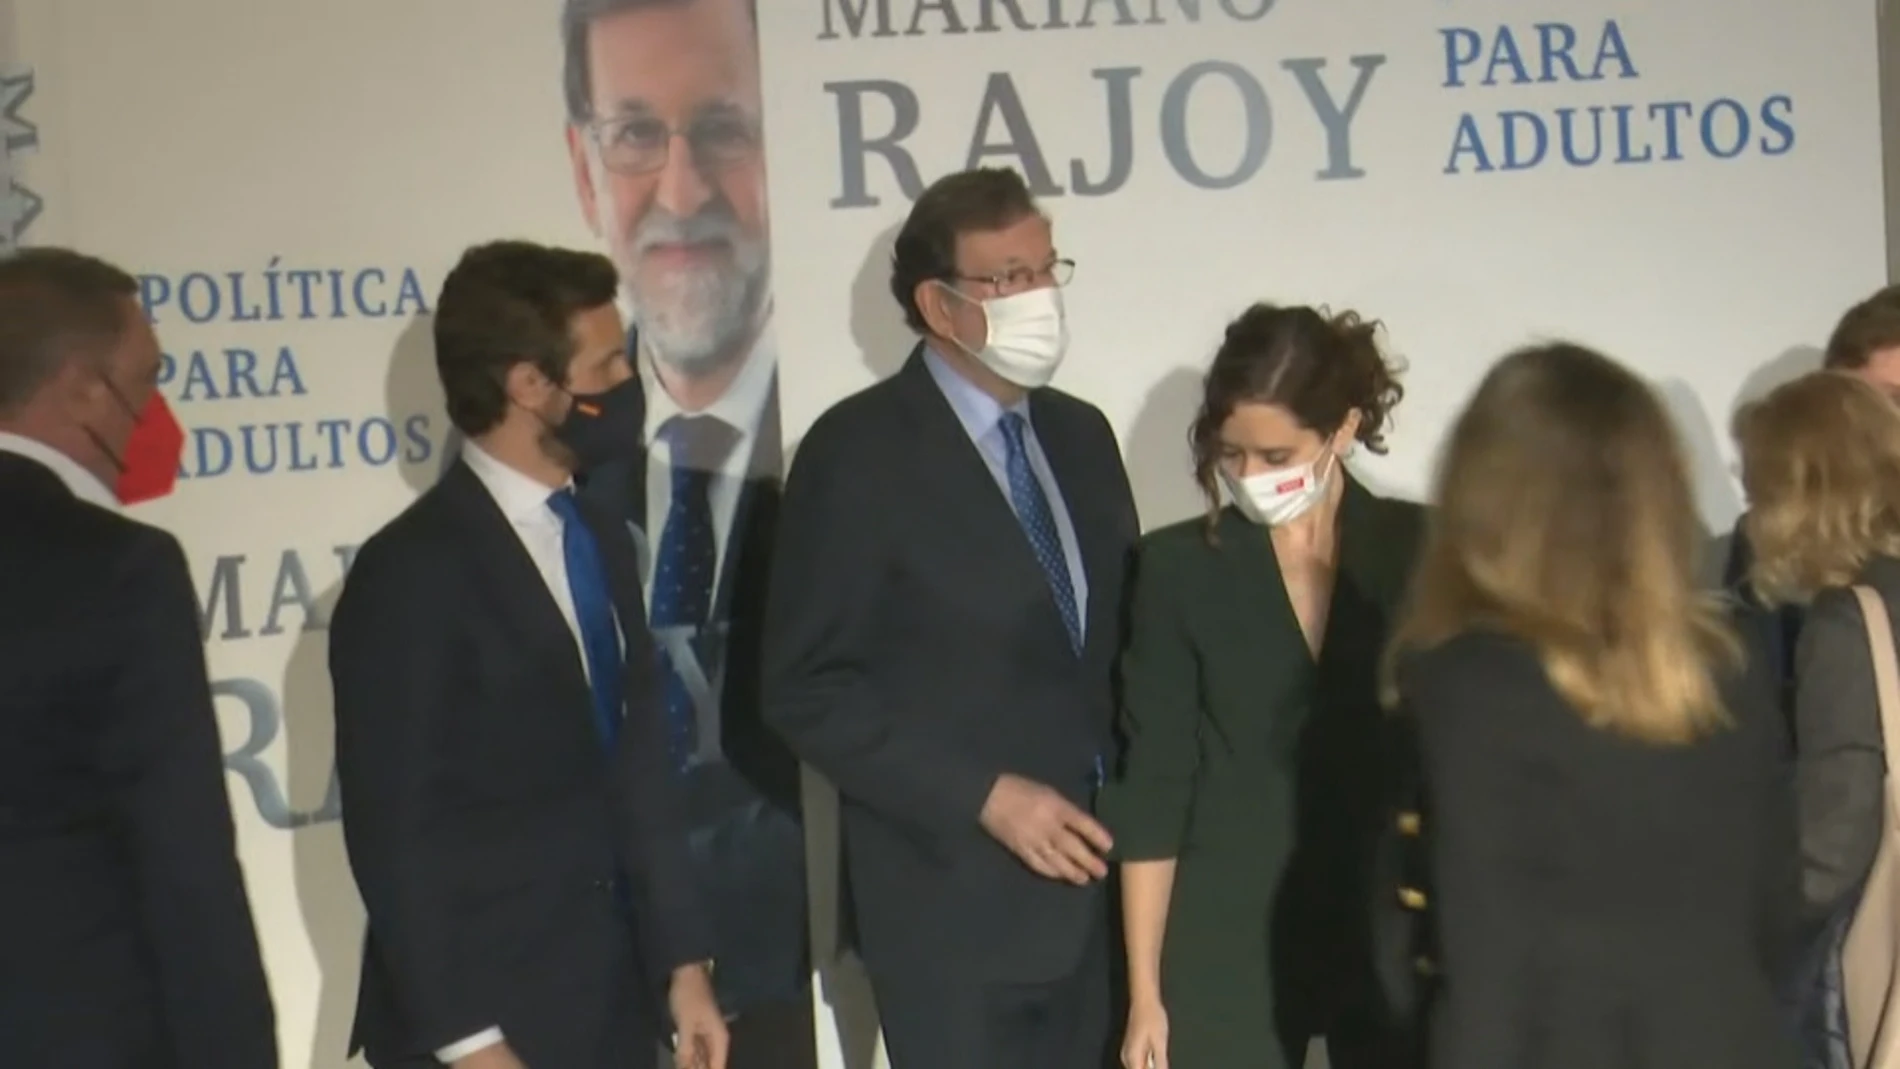 Los intentos (sin éxito) de Rajoy para que Díaz Ayuso y Casado posen juntos